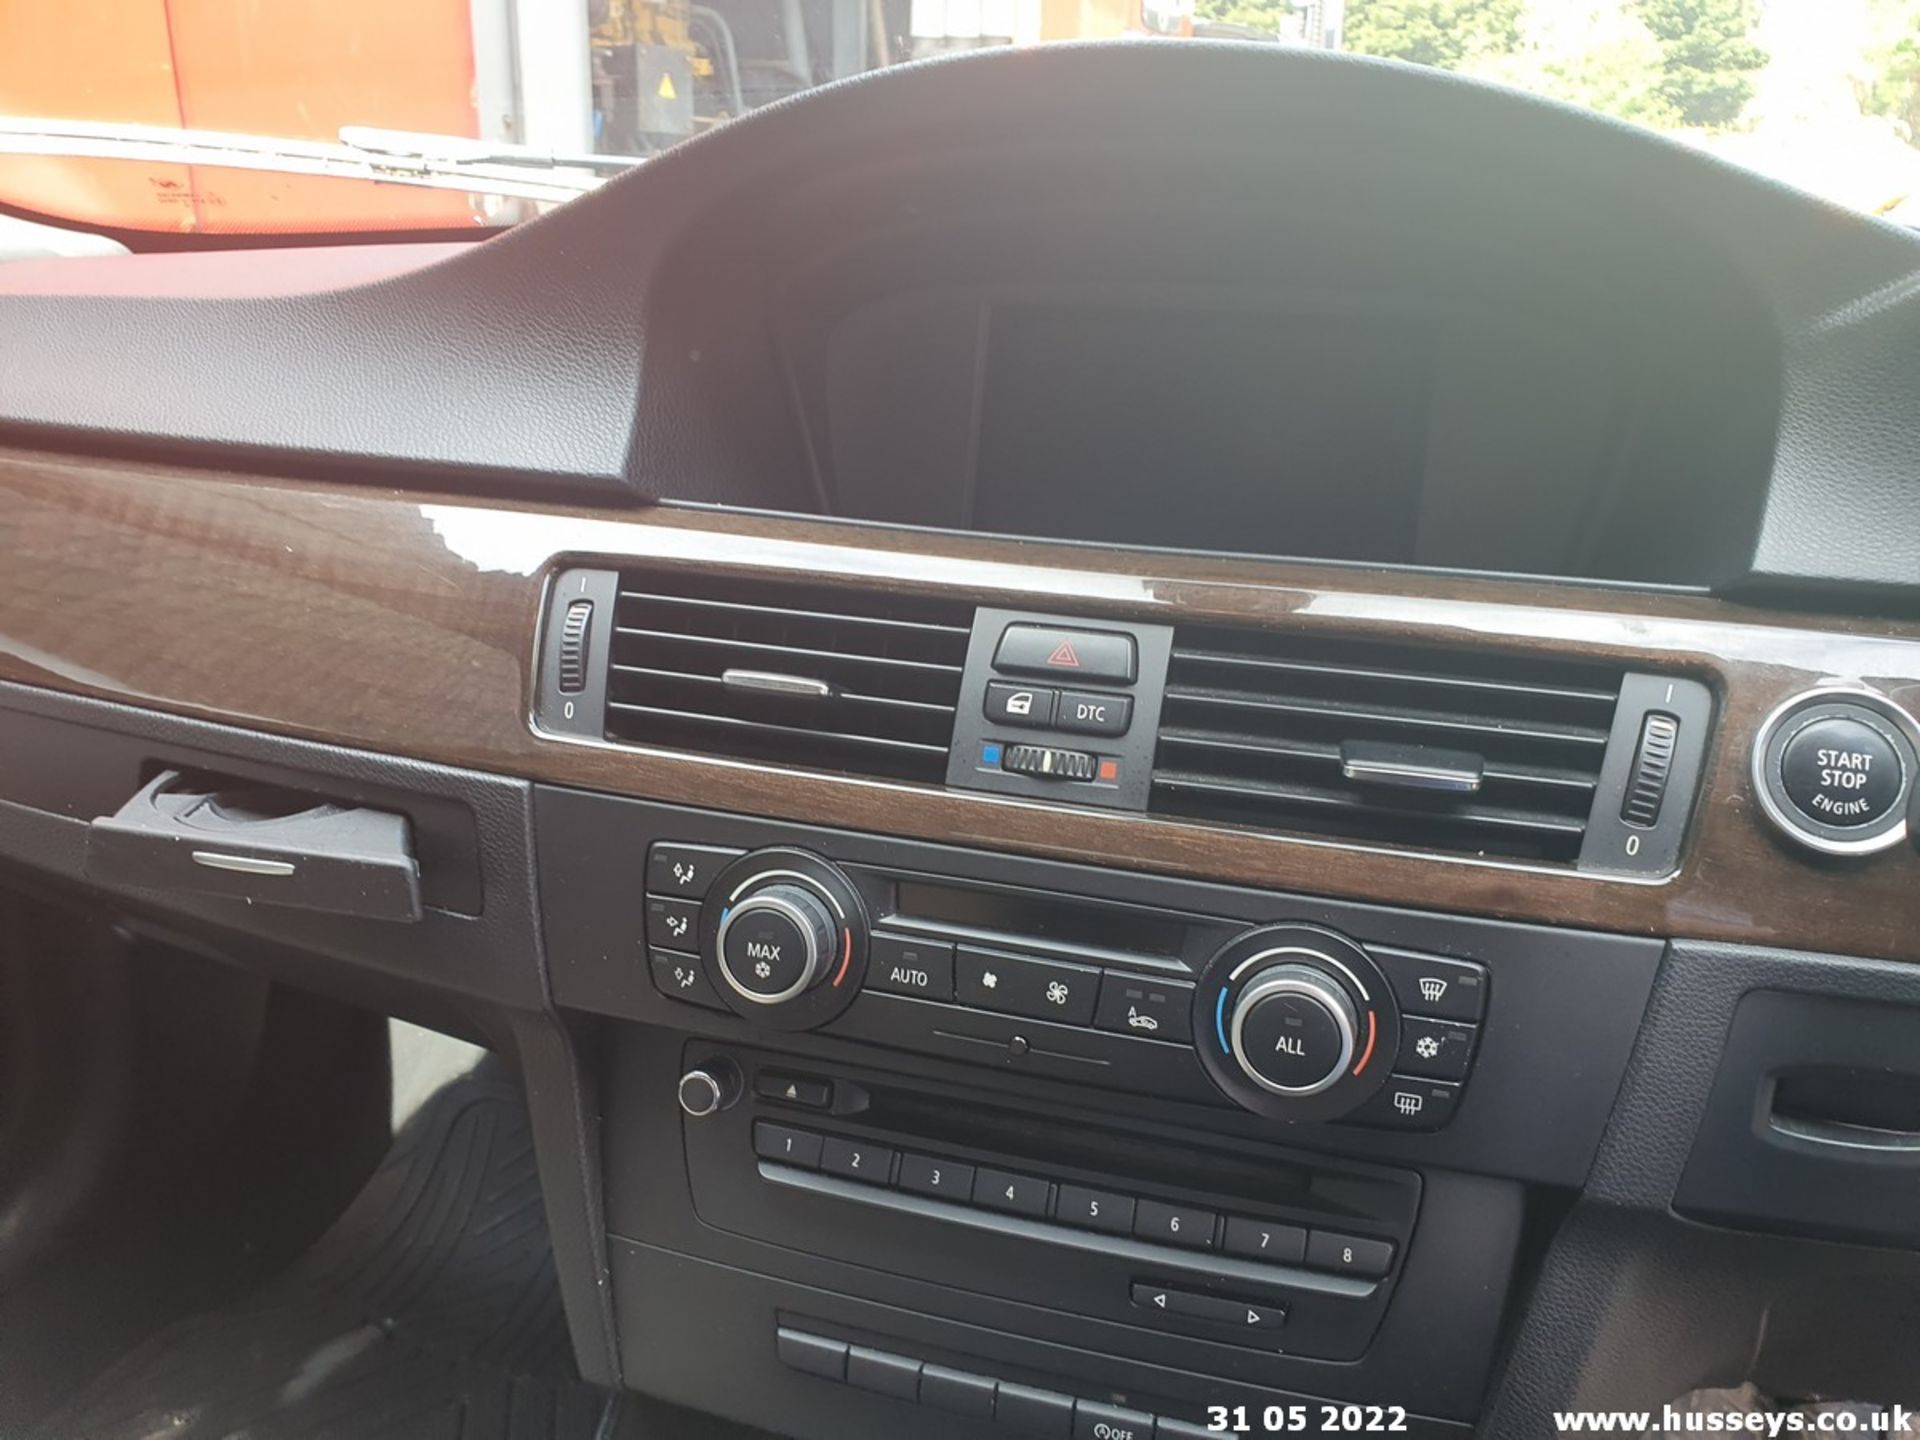 10/60 BMW 318D SE BUSINESS EDITION - 1995cc 4dr Saloon (Blue, 140k) - Image 24 of 25